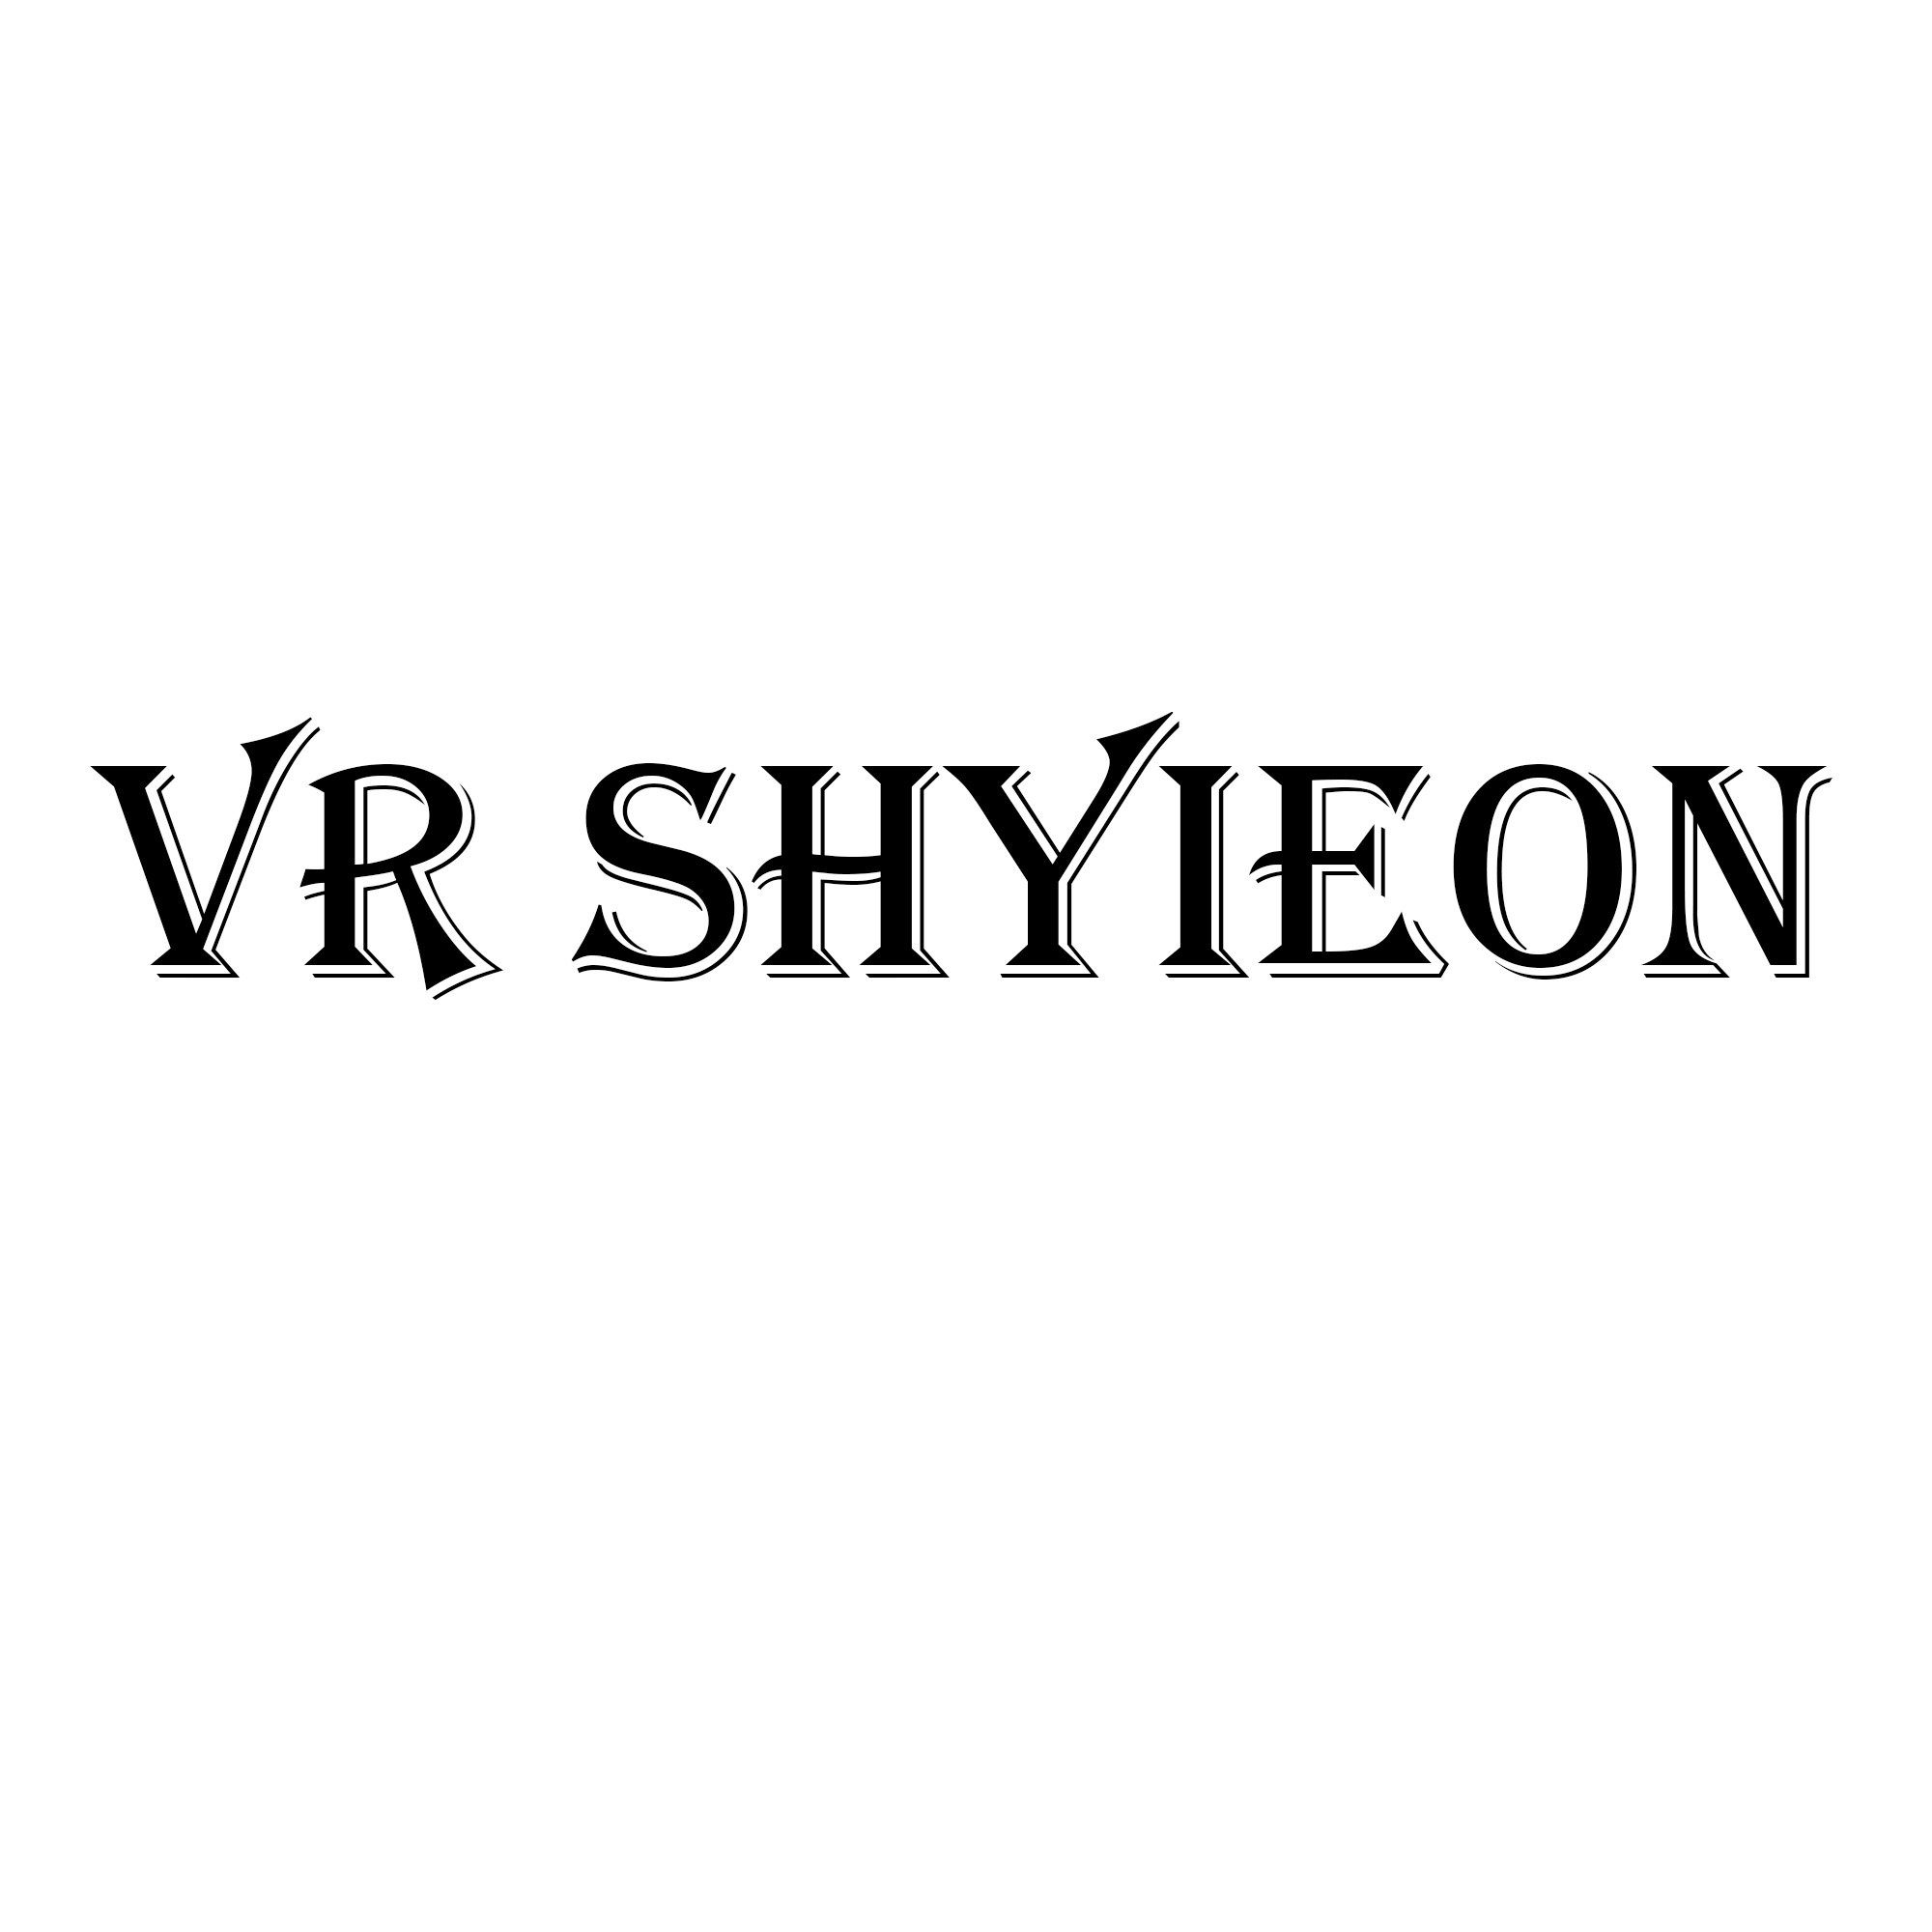 VR SHYIEON